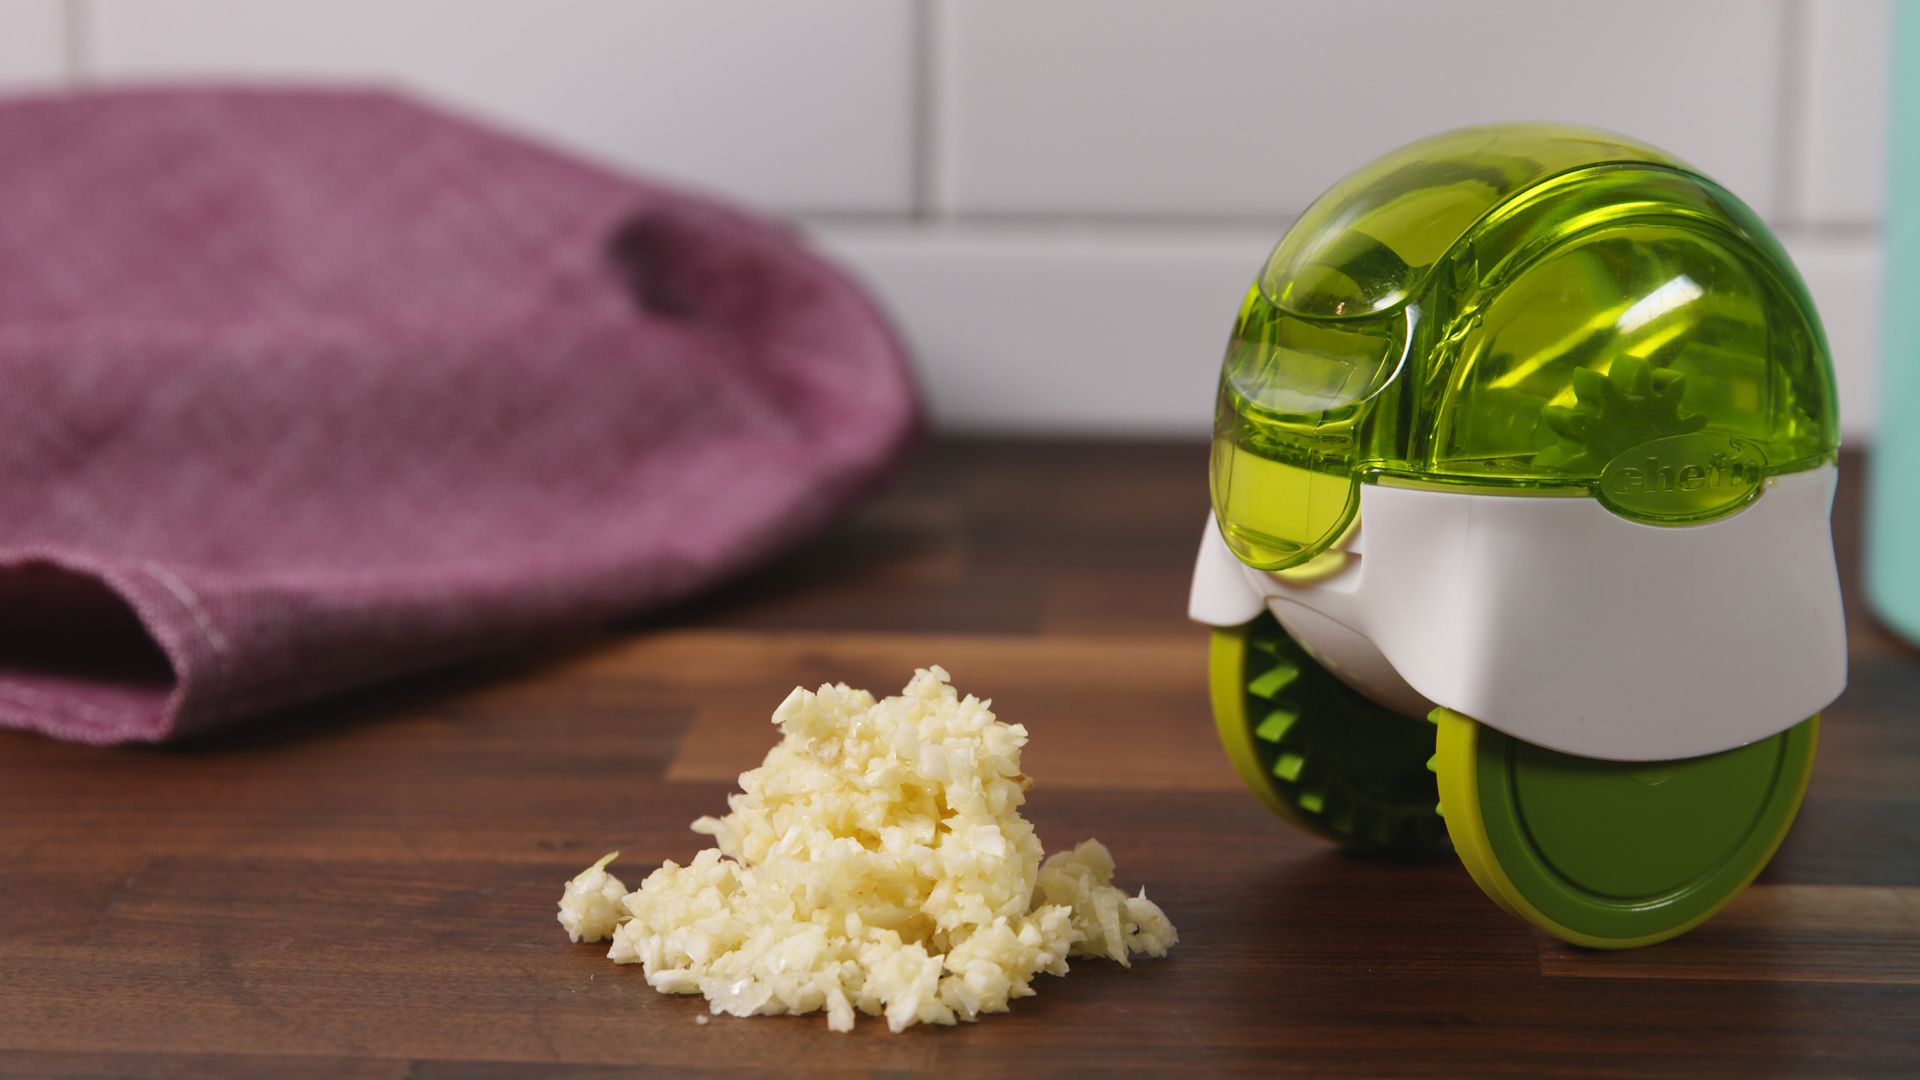 Garlic Zoom – Wheeled Garlic Chopper by Chef'n